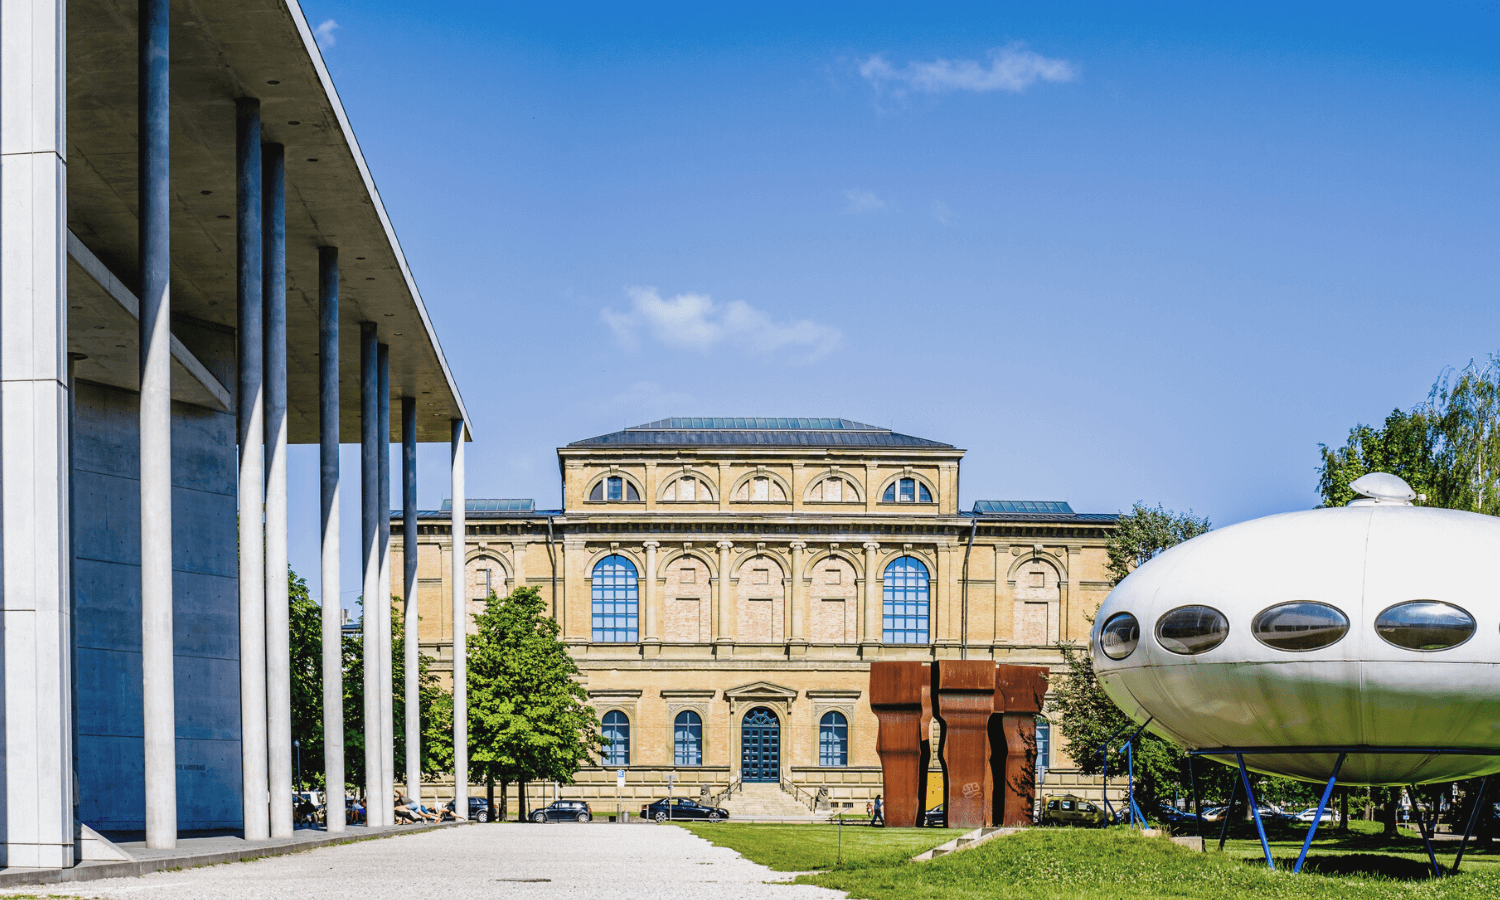 Wer einen Städtetrip nach München macht, der sollte unbedingt die Alte und Neue Pinakothek besuchen. Auf dem Foto sieht man die beeindruckenden Gebäude der beiden Kunstmuseen. © iStock.com